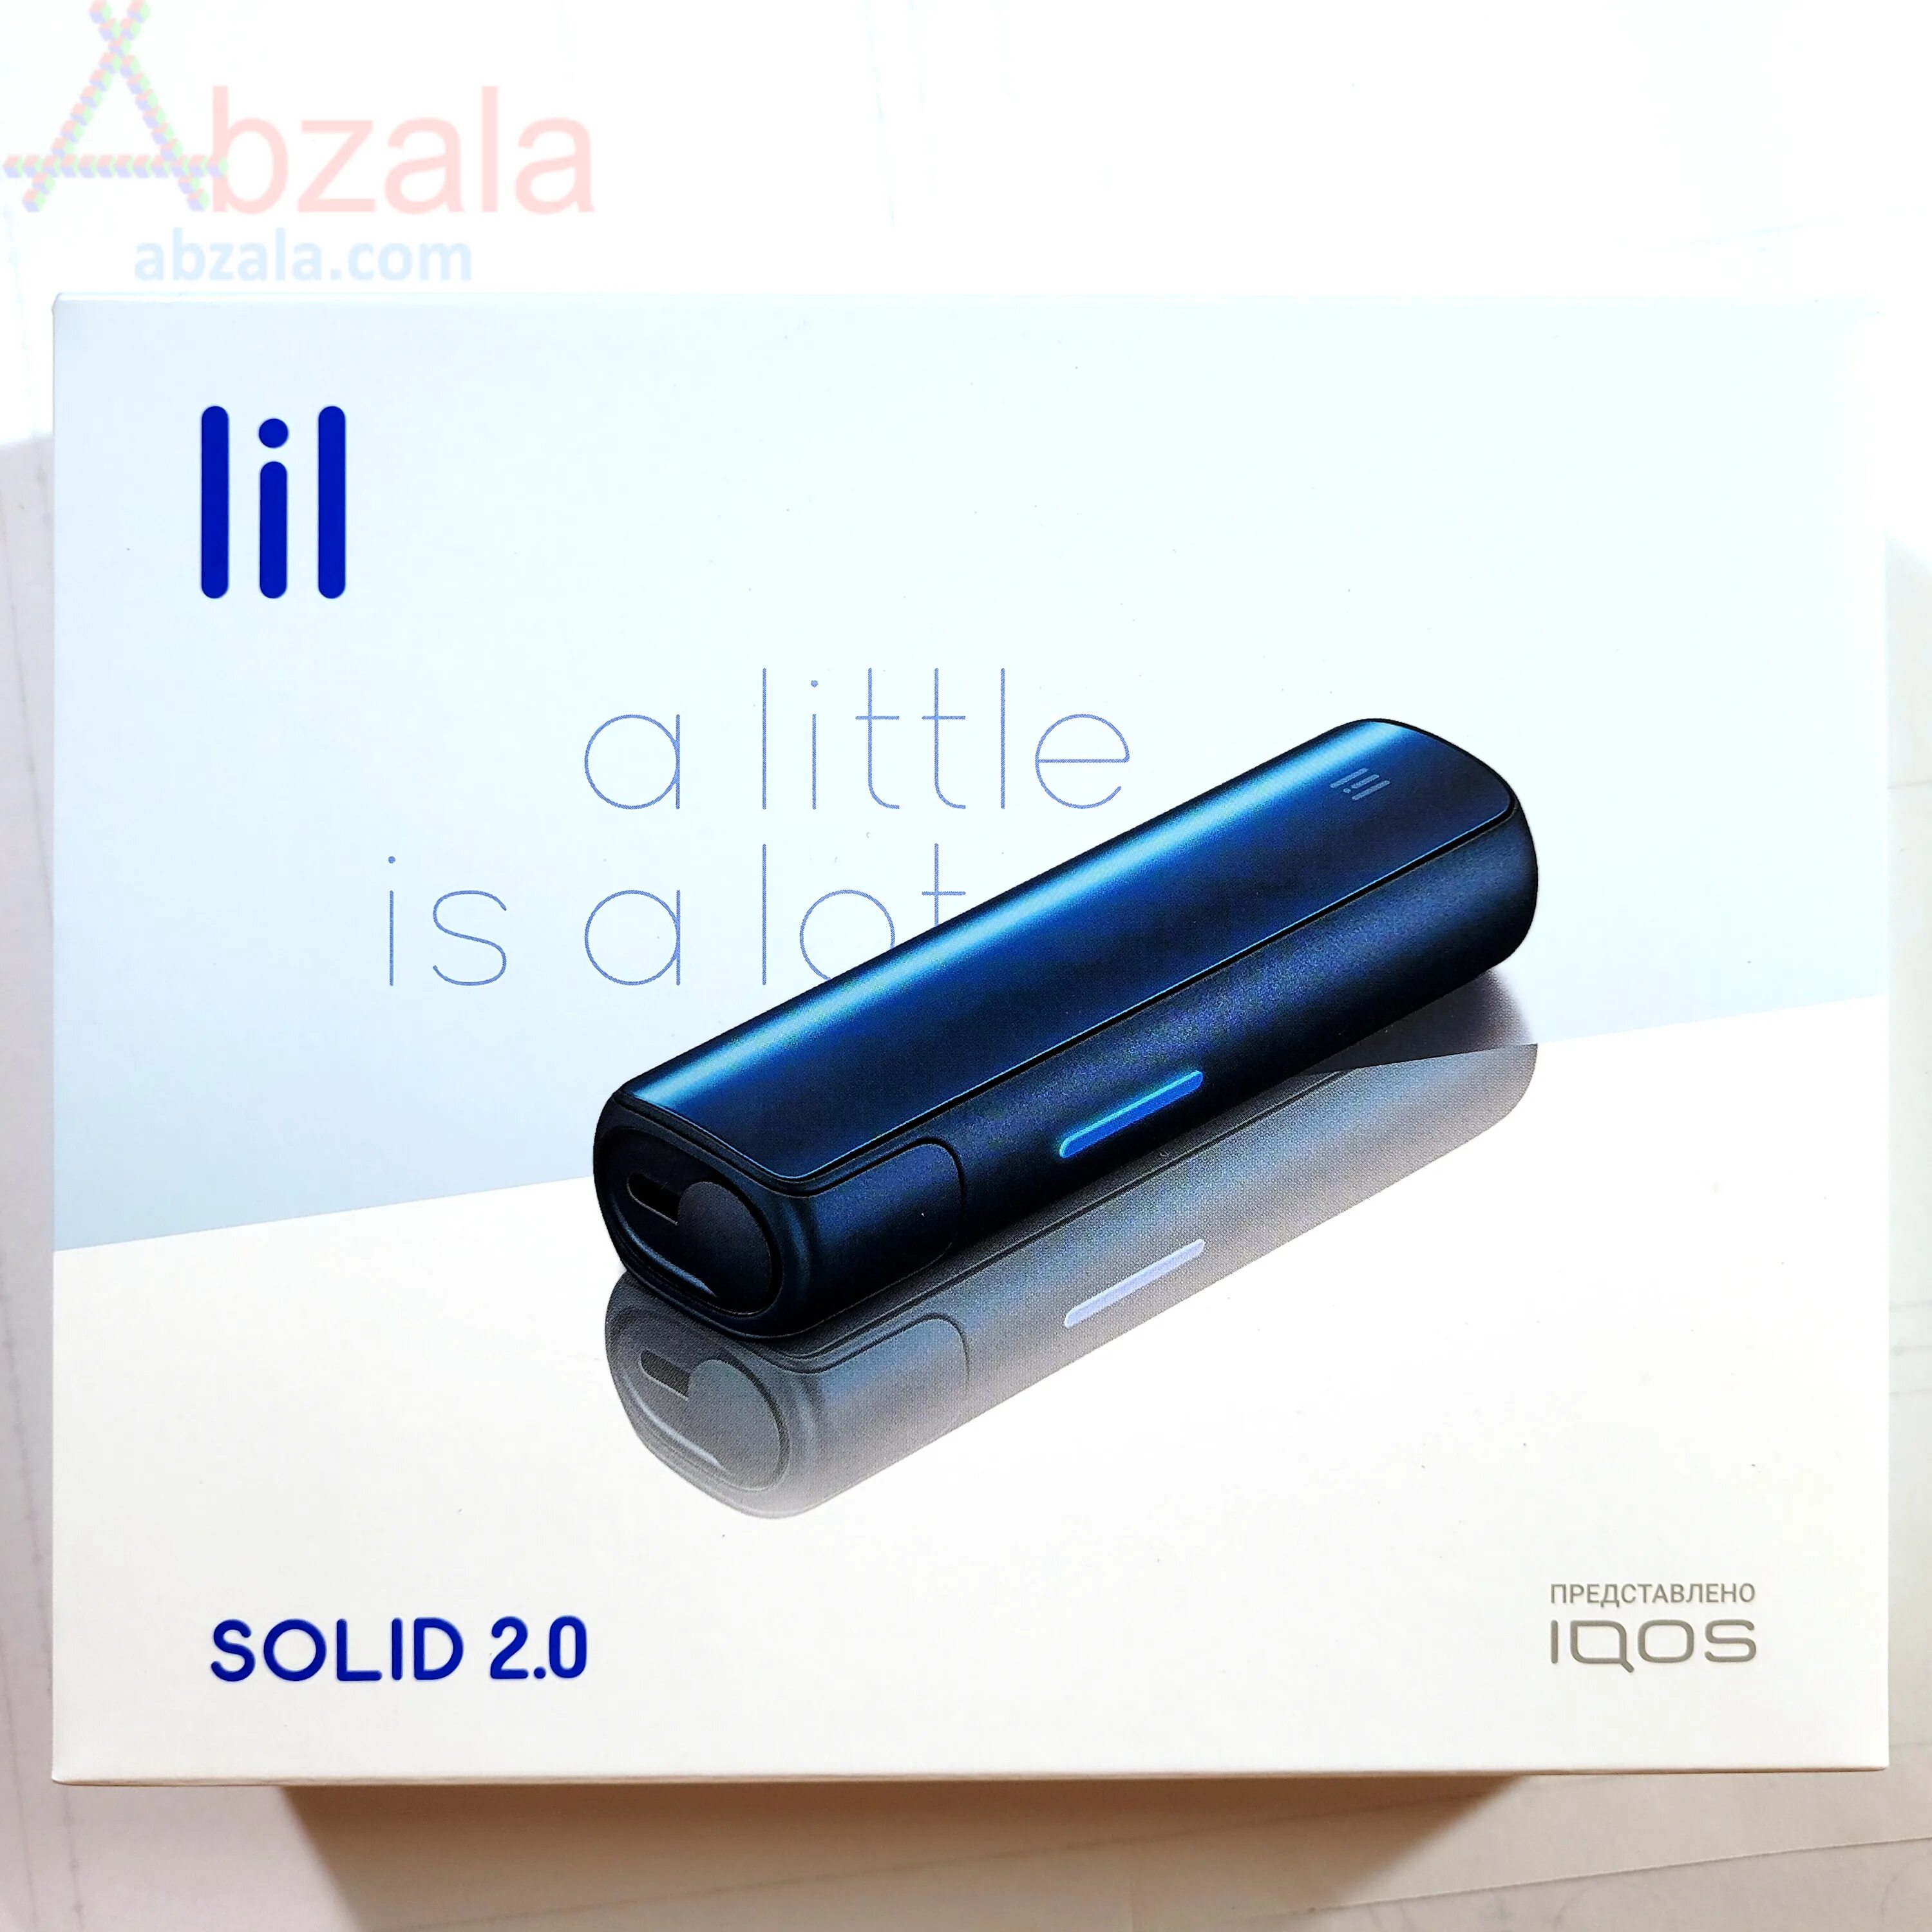 Электронная сигарета Lil Solid 2.0. IQOS Lil 2.0. Нагреватель табака Lil Solid 2.0. Комплект Lil Solid IQOS 2. Solid 2.0 plus купить